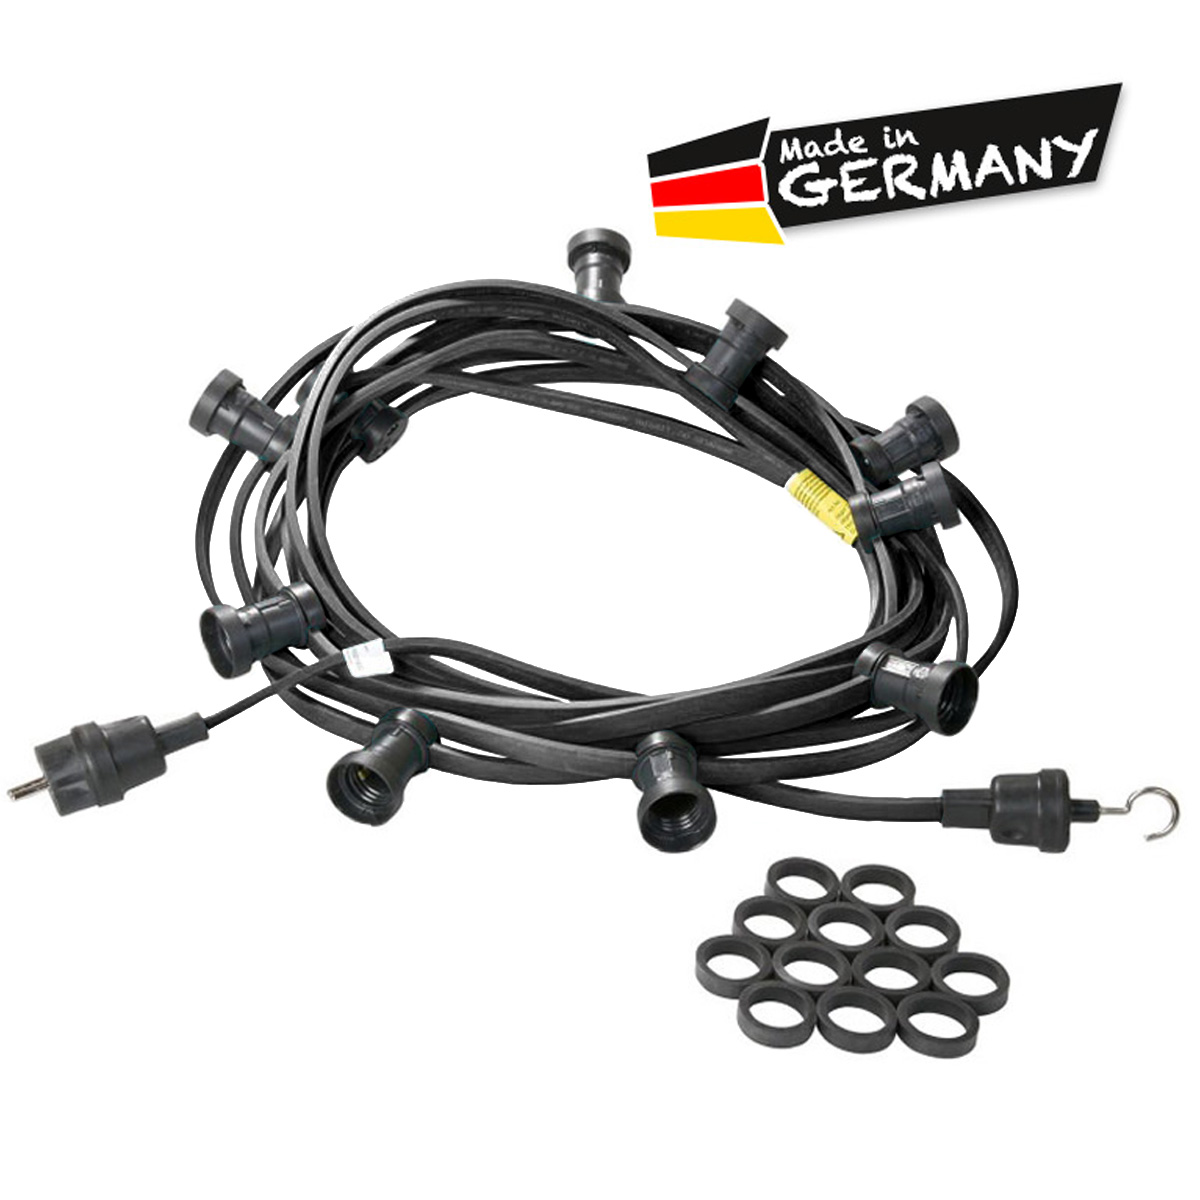 Illu-/Partylichterkette schwarz 30m | Außenlichterkette | Made in Germany | 30 x E27 Schraubfassung